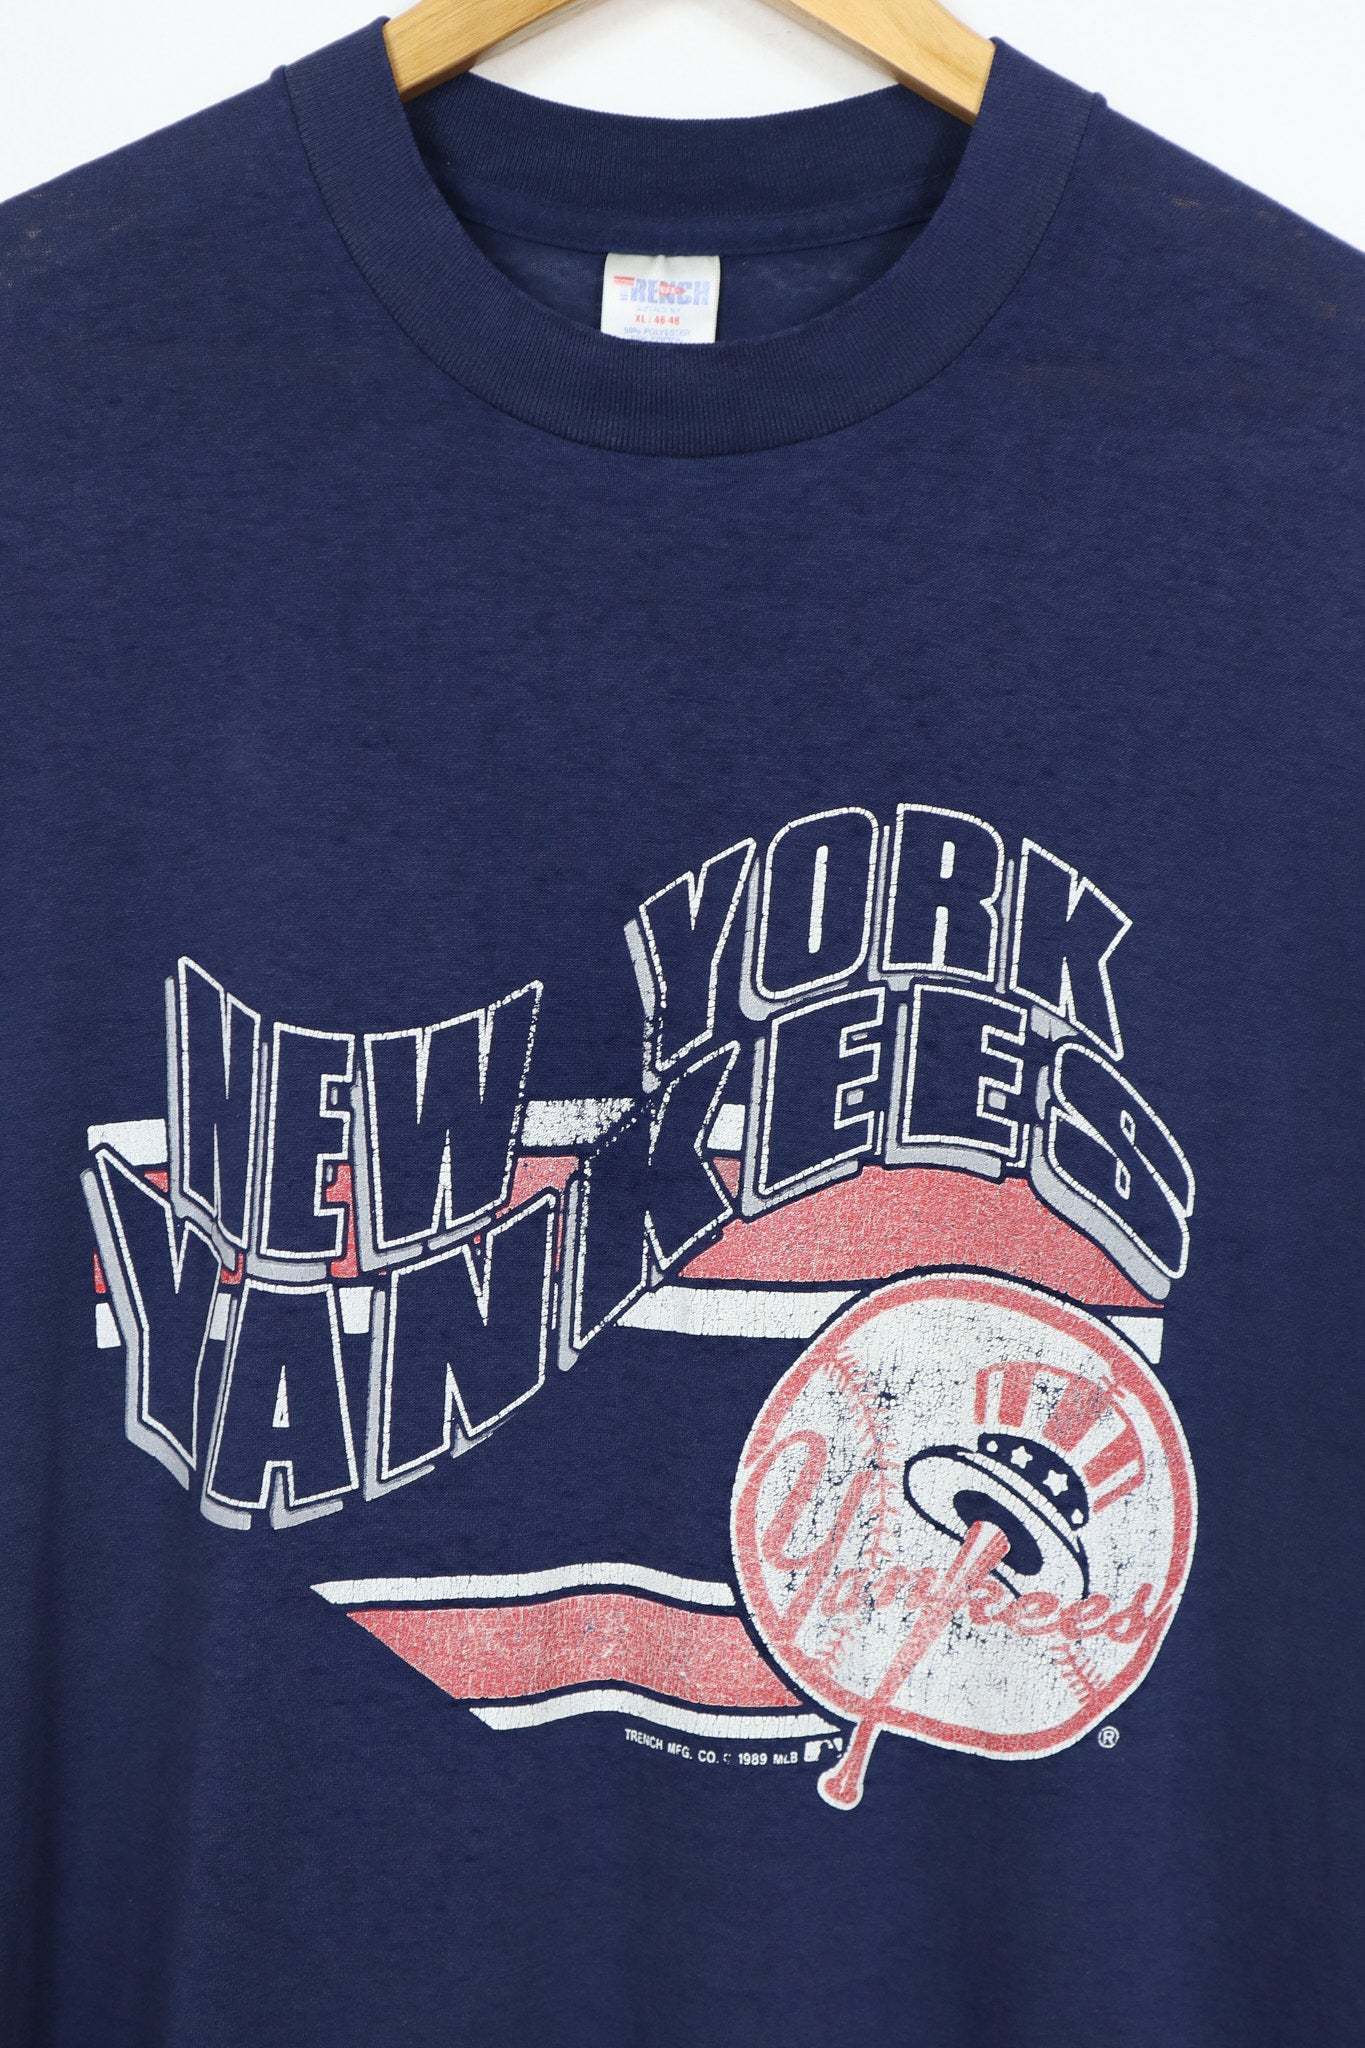 Vintage 1989 New York Yankees Tee